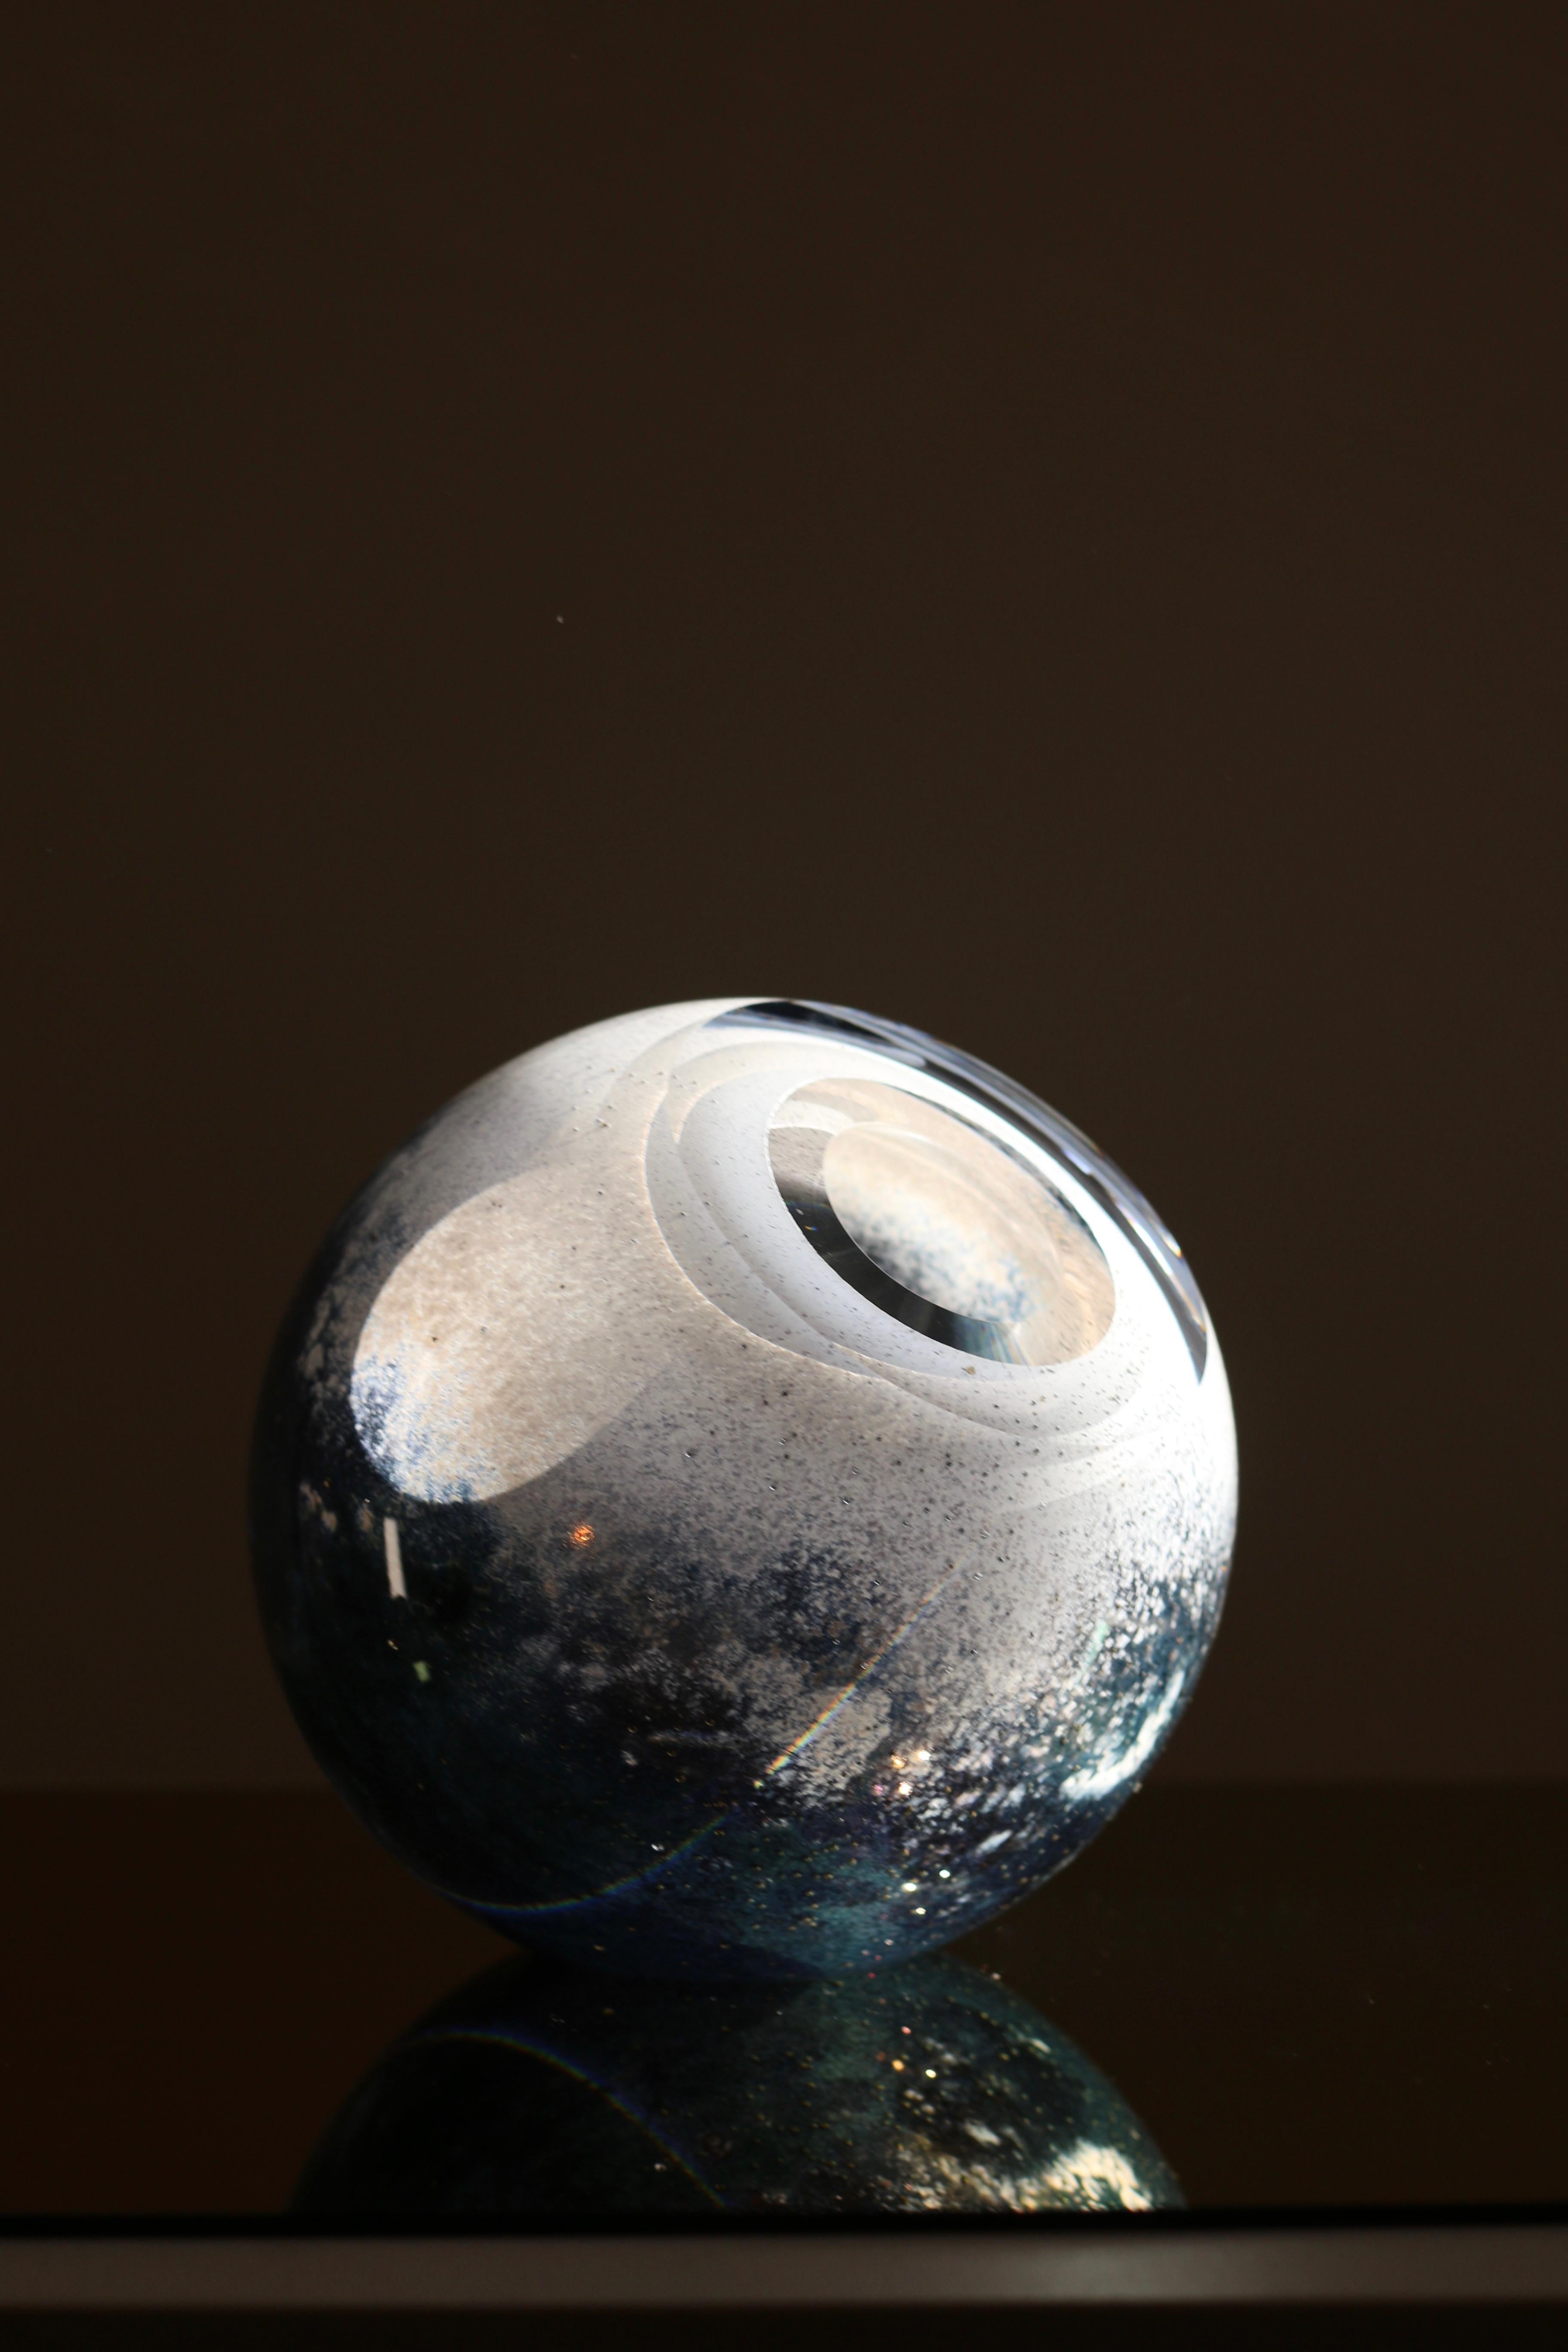 Runde, mundgeblasene Glasvase in Weiß und Blau.
Extra klares, hochwertiges und glänzendes Glas.
Handgefertigt von einem Team hochqualifizierter Handwerker. 
Diese zeitgenössische Kleinplastik ist ein Einzelstück aus der Sammlung Experimental. 
Die